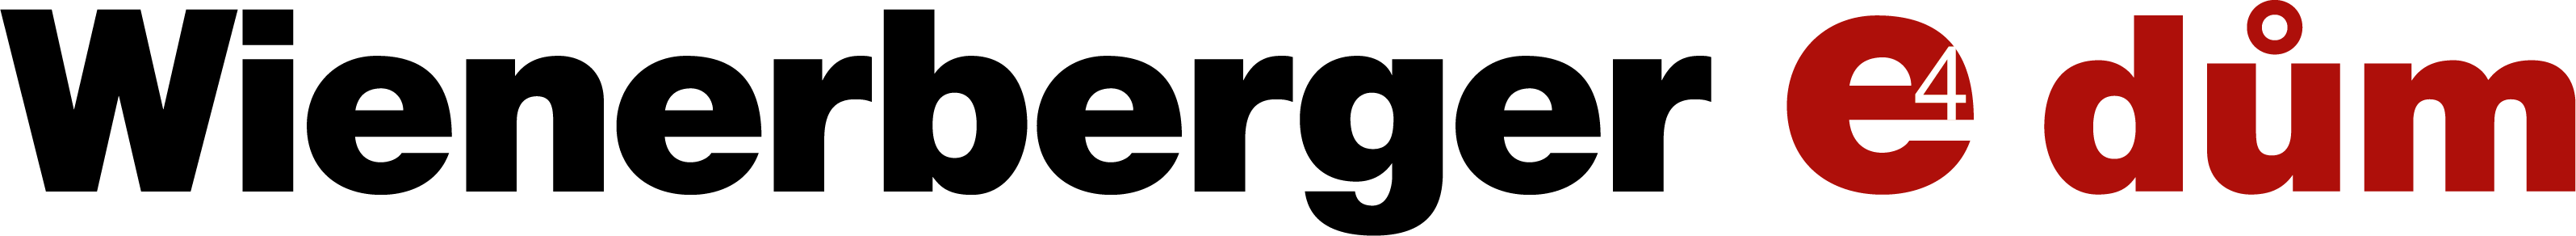 Logo Wienerberger e4 dum - red e4 dům